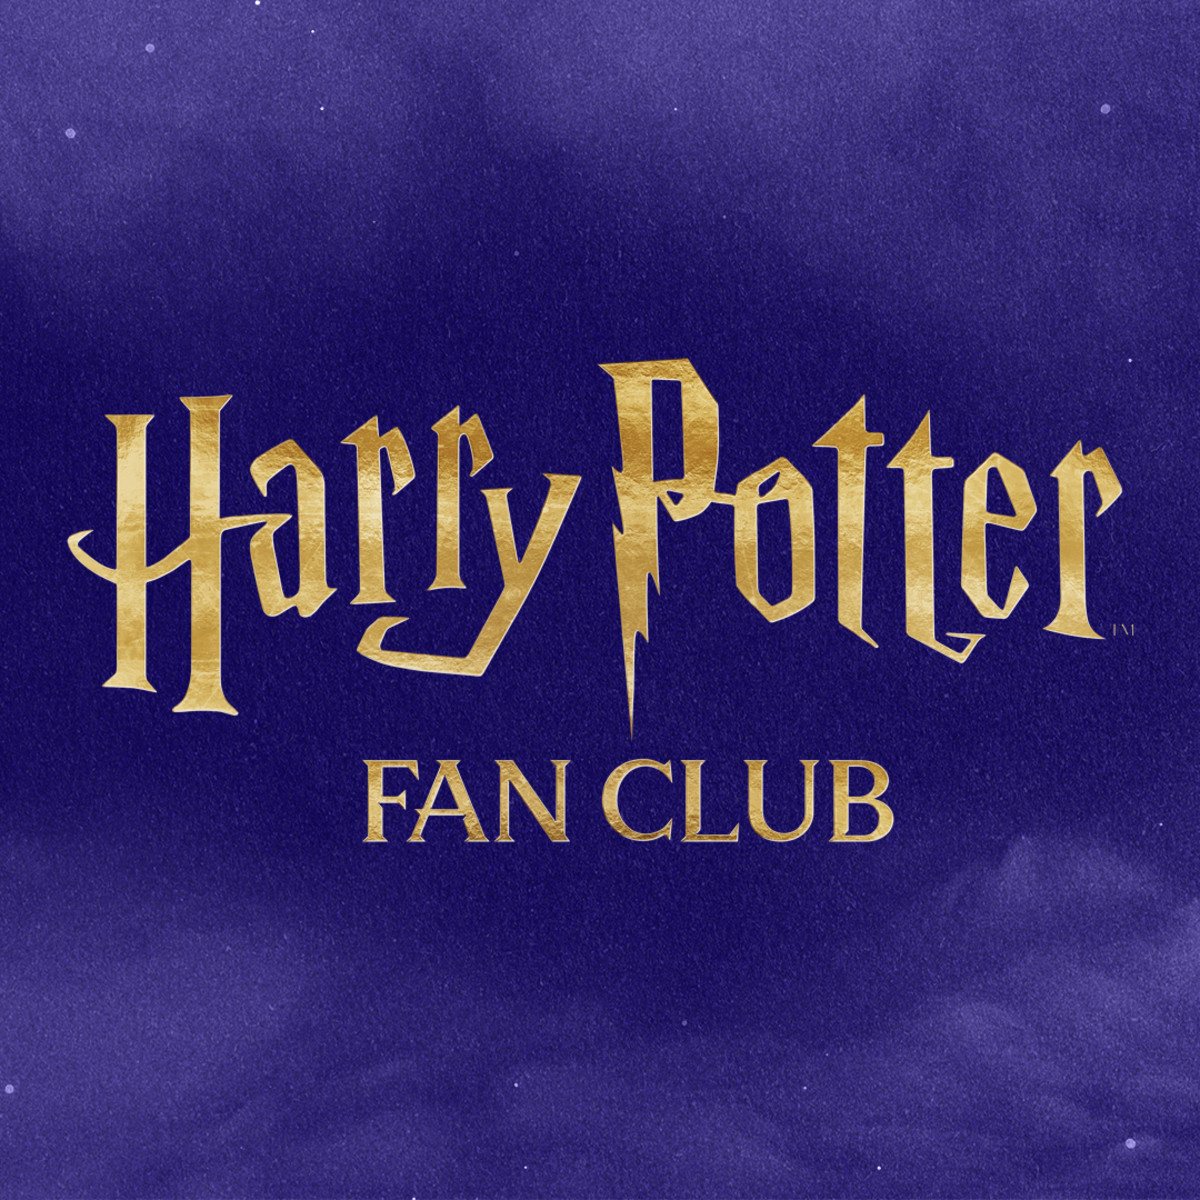 Harry Potter Fan Club PH